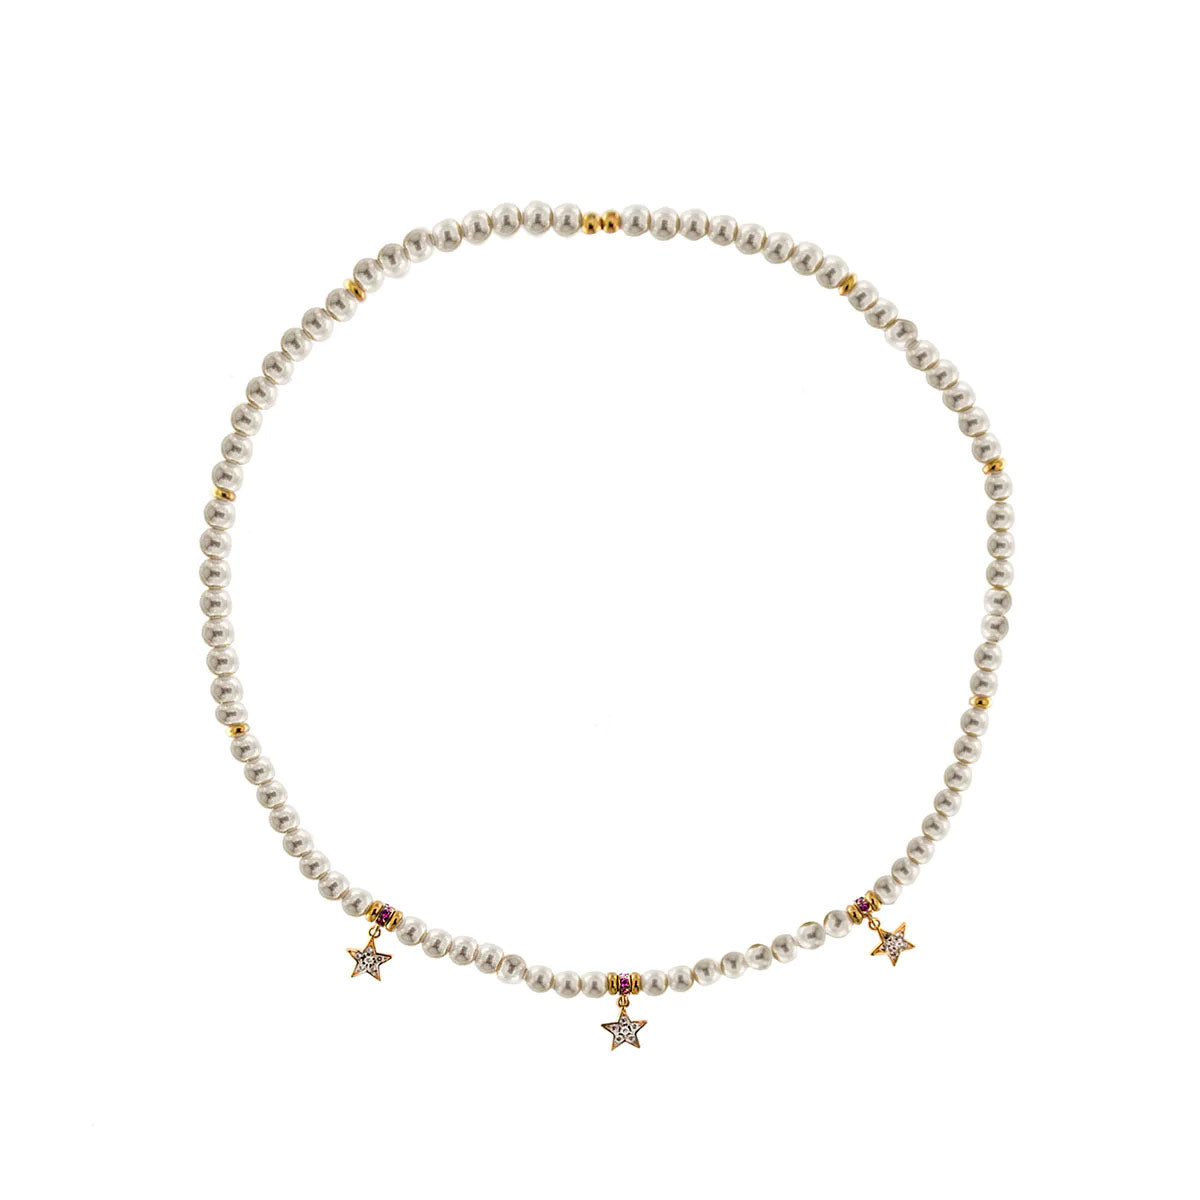 Girocollo elastico di perle bianche e 3 stelle pendenti con zirconi bianchi.